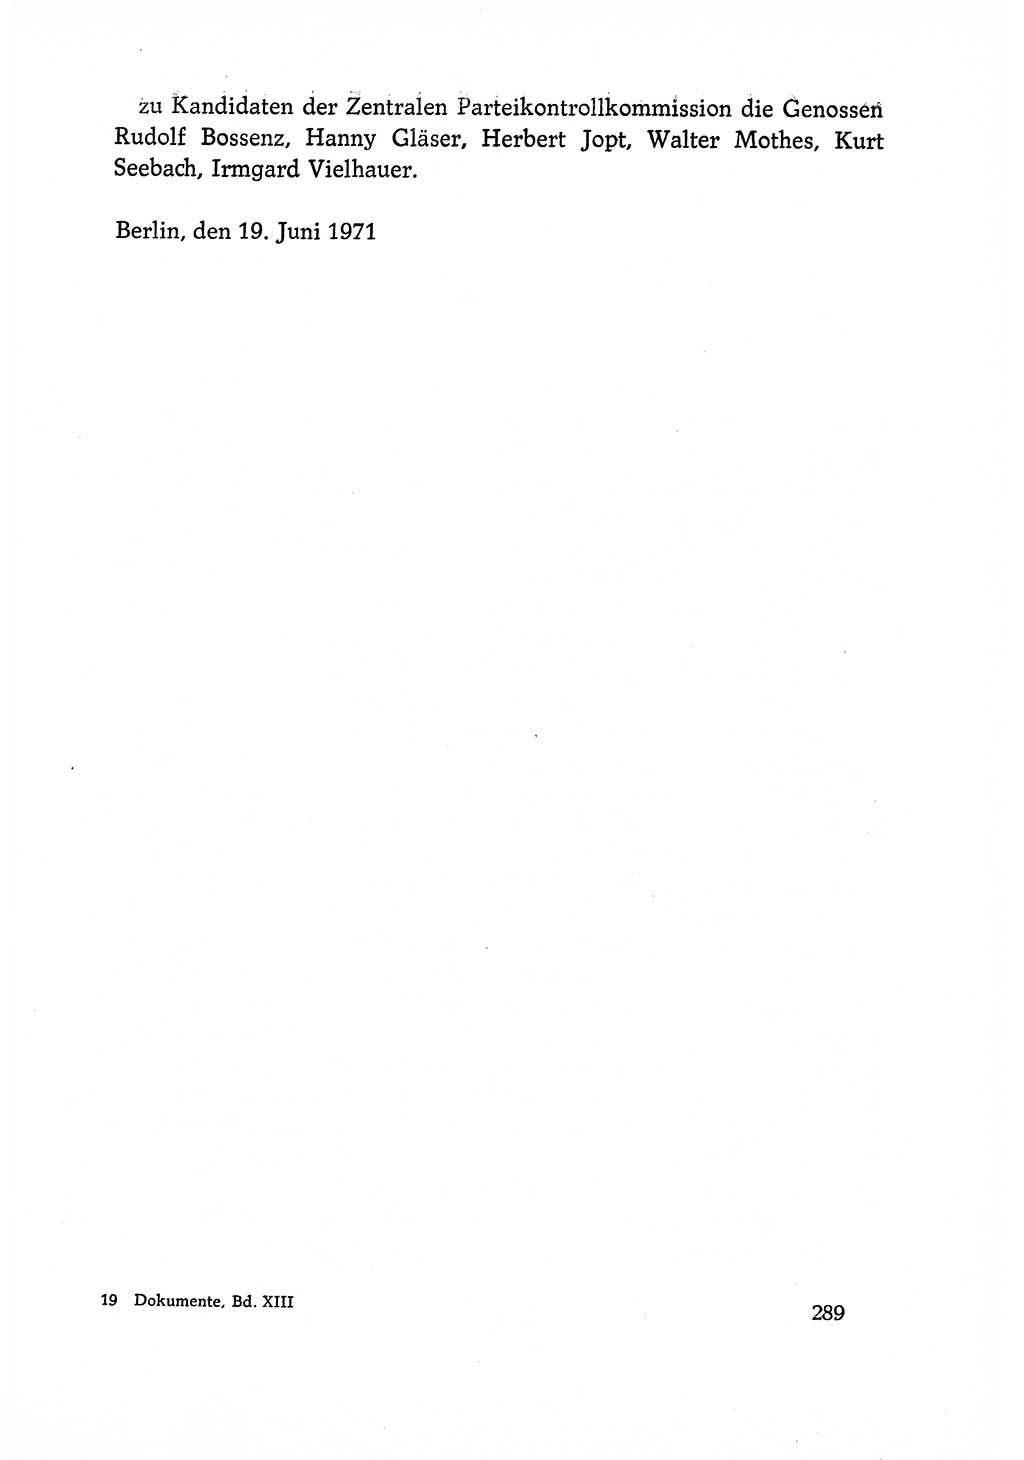 Dokumente der Sozialistischen Einheitspartei Deutschlands (SED) [Deutsche Demokratische Republik (DDR)] 1970-1971, Seite 289 (Dok. SED DDR 1970-1971, S. 289)